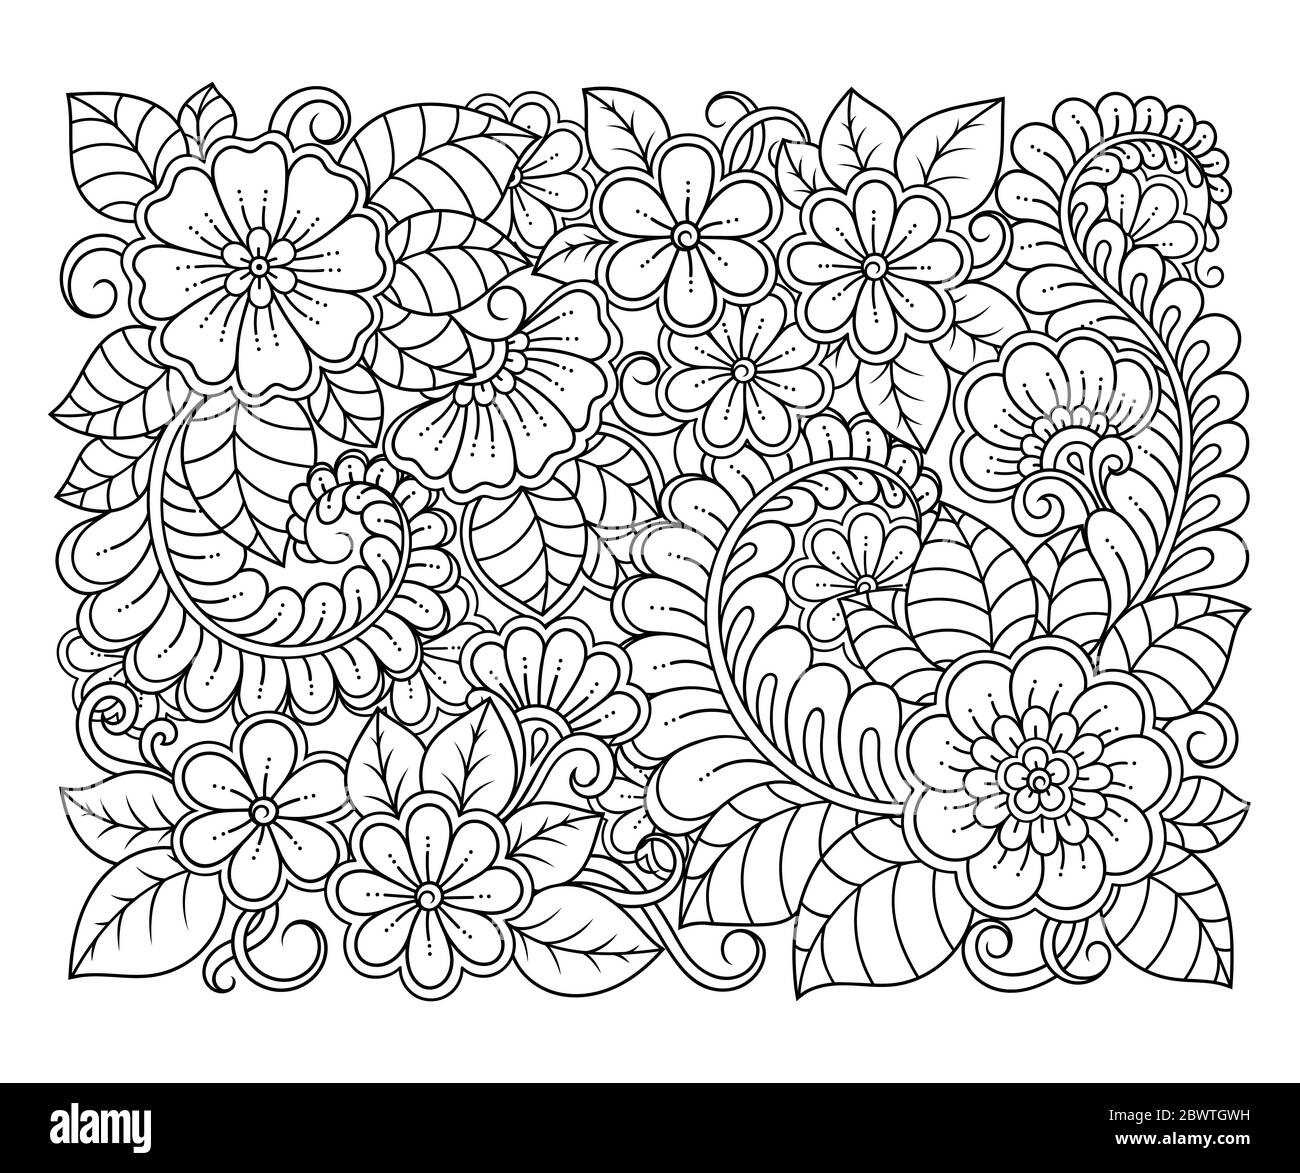 Outline quadratischen Blumenmuster im mehndi Stil zum Ausmalen Buchseite. Antistress für Erwachsene und Kinder. Doodle Ornament in schwarz und weiß. Stock Vektor